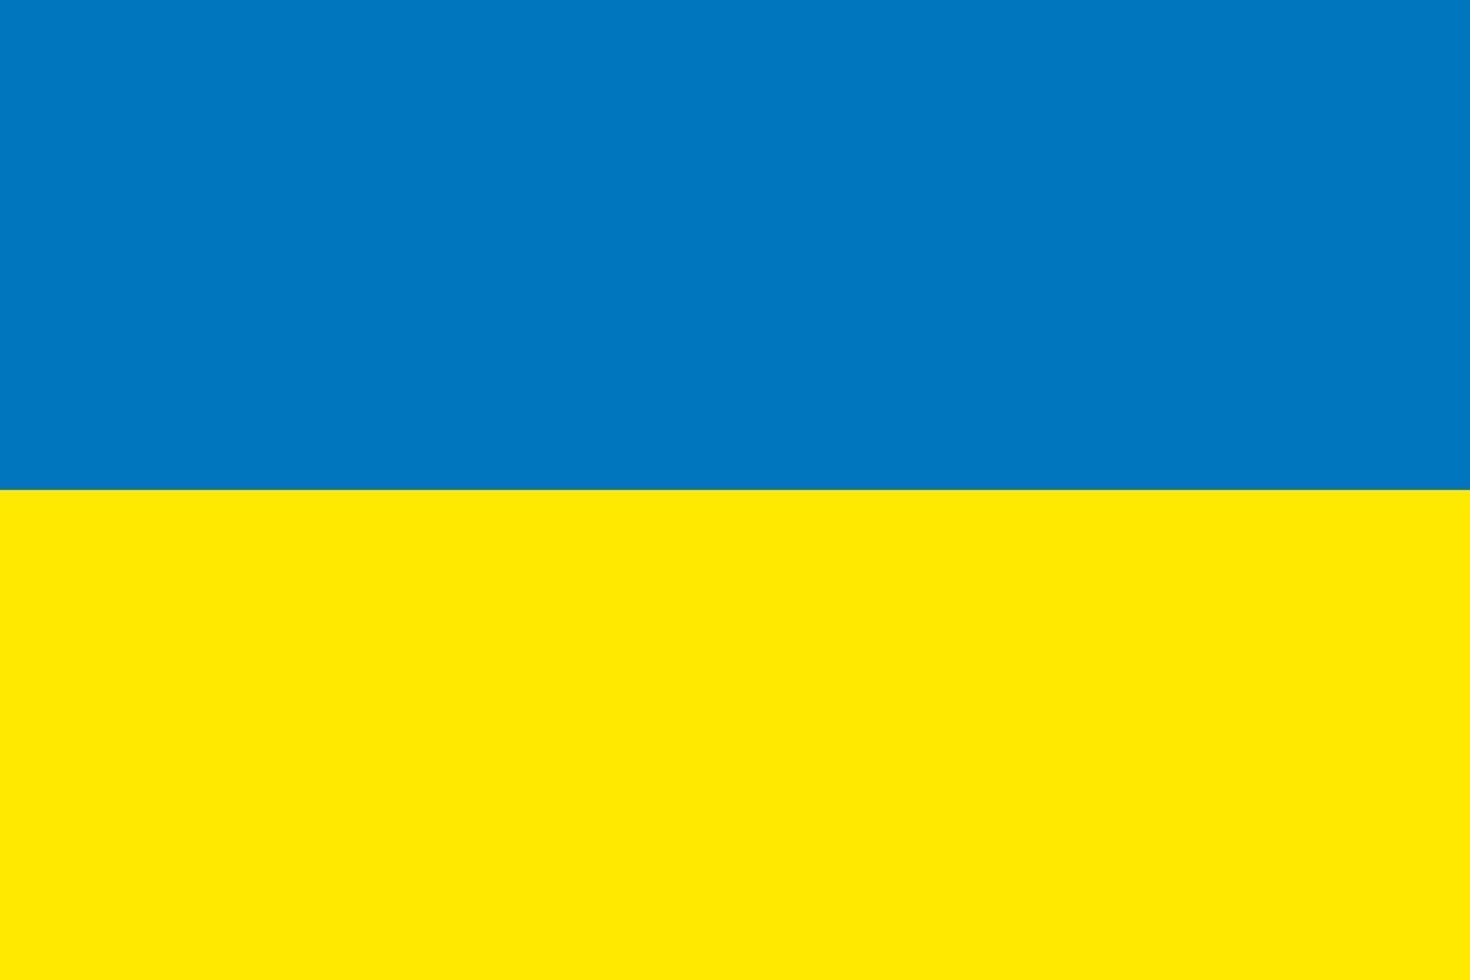 ucrânia oficialmente bandeira vetor